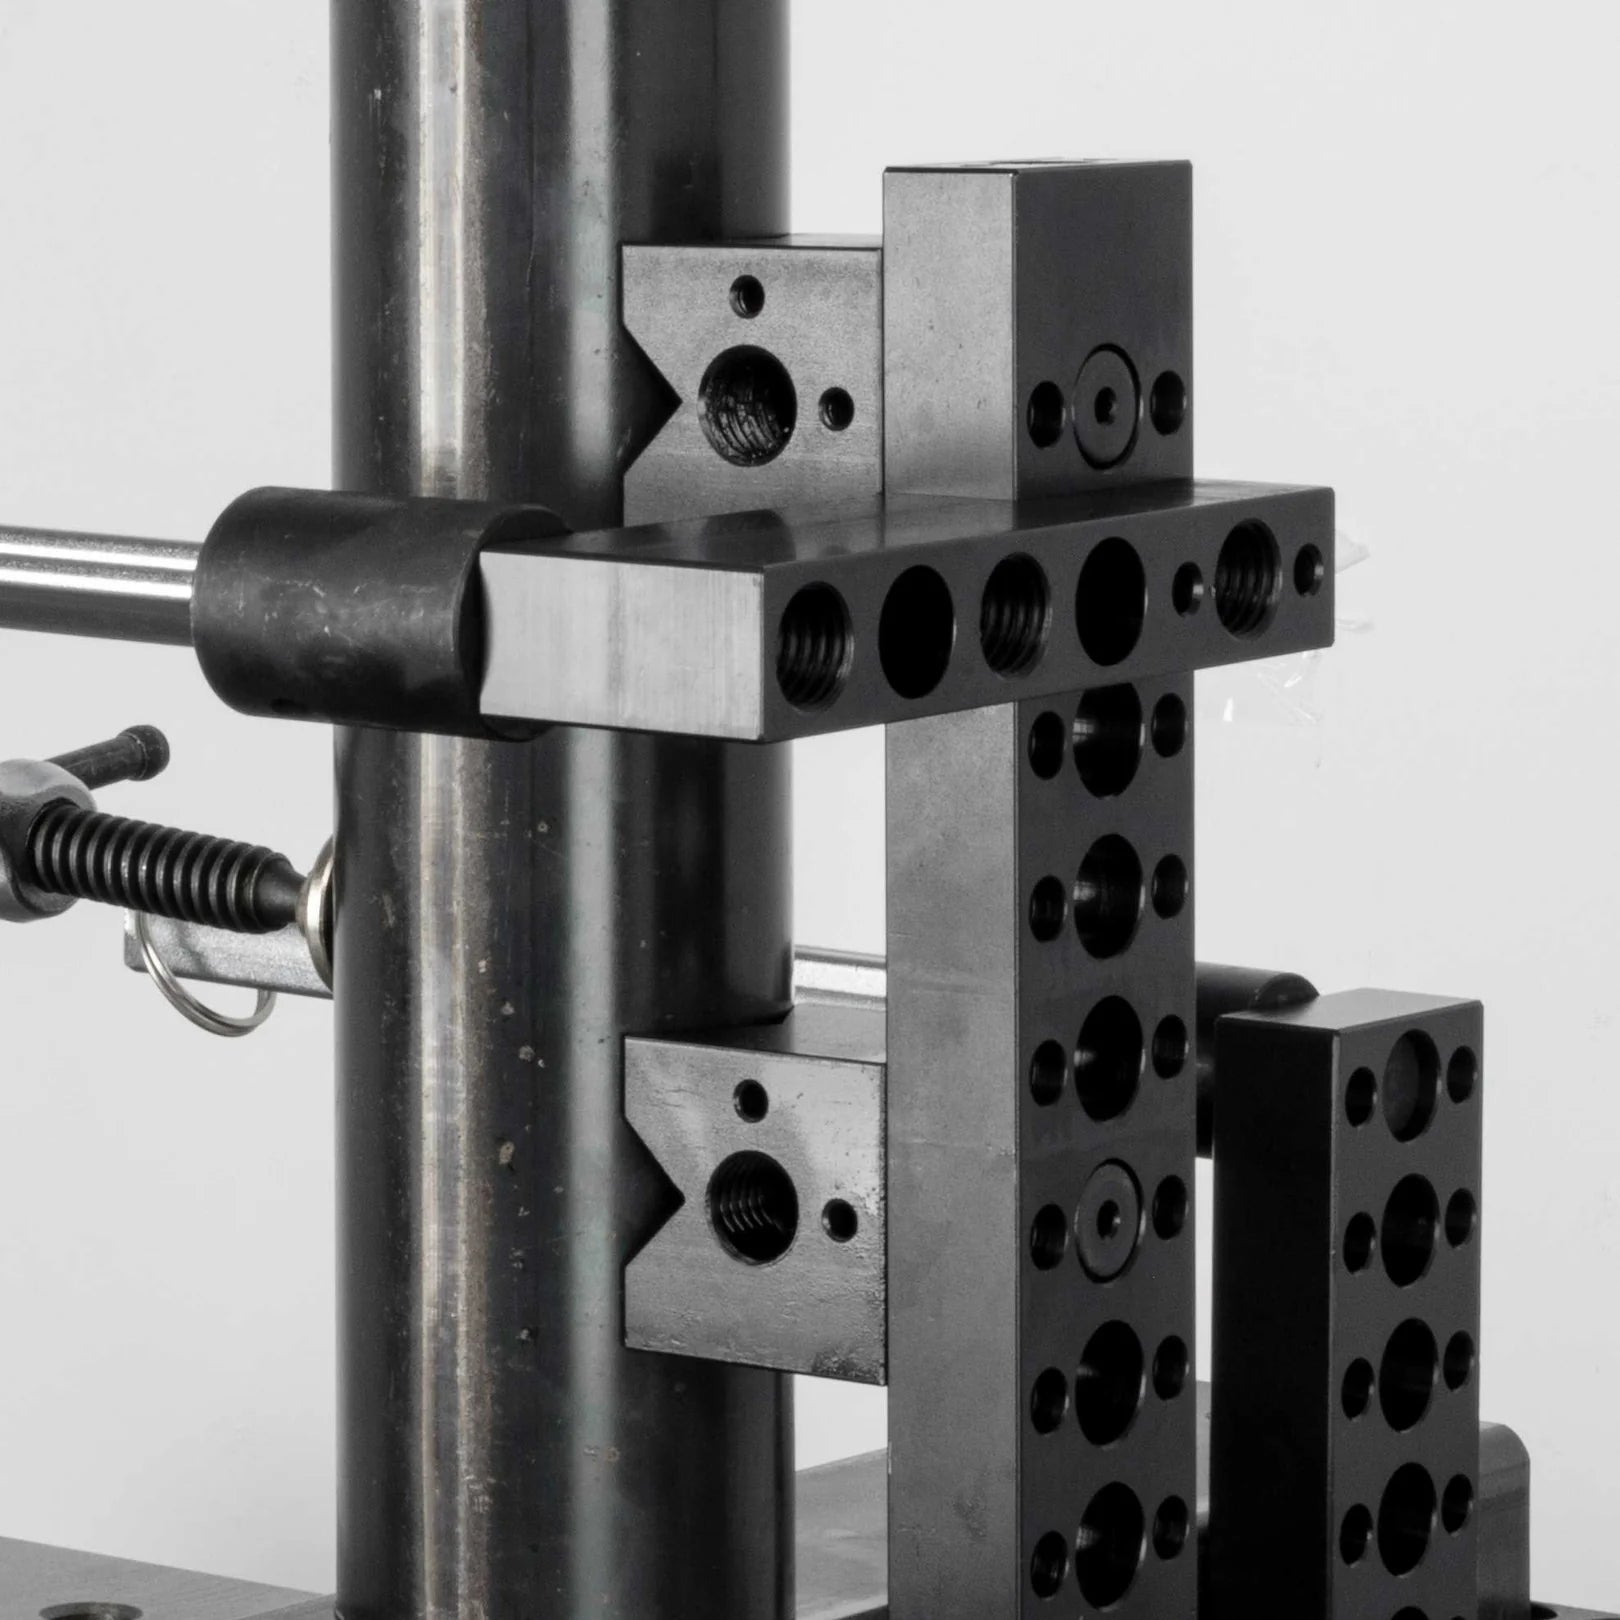 Vertical Modular Extension Block 150 mm - 19 mm System